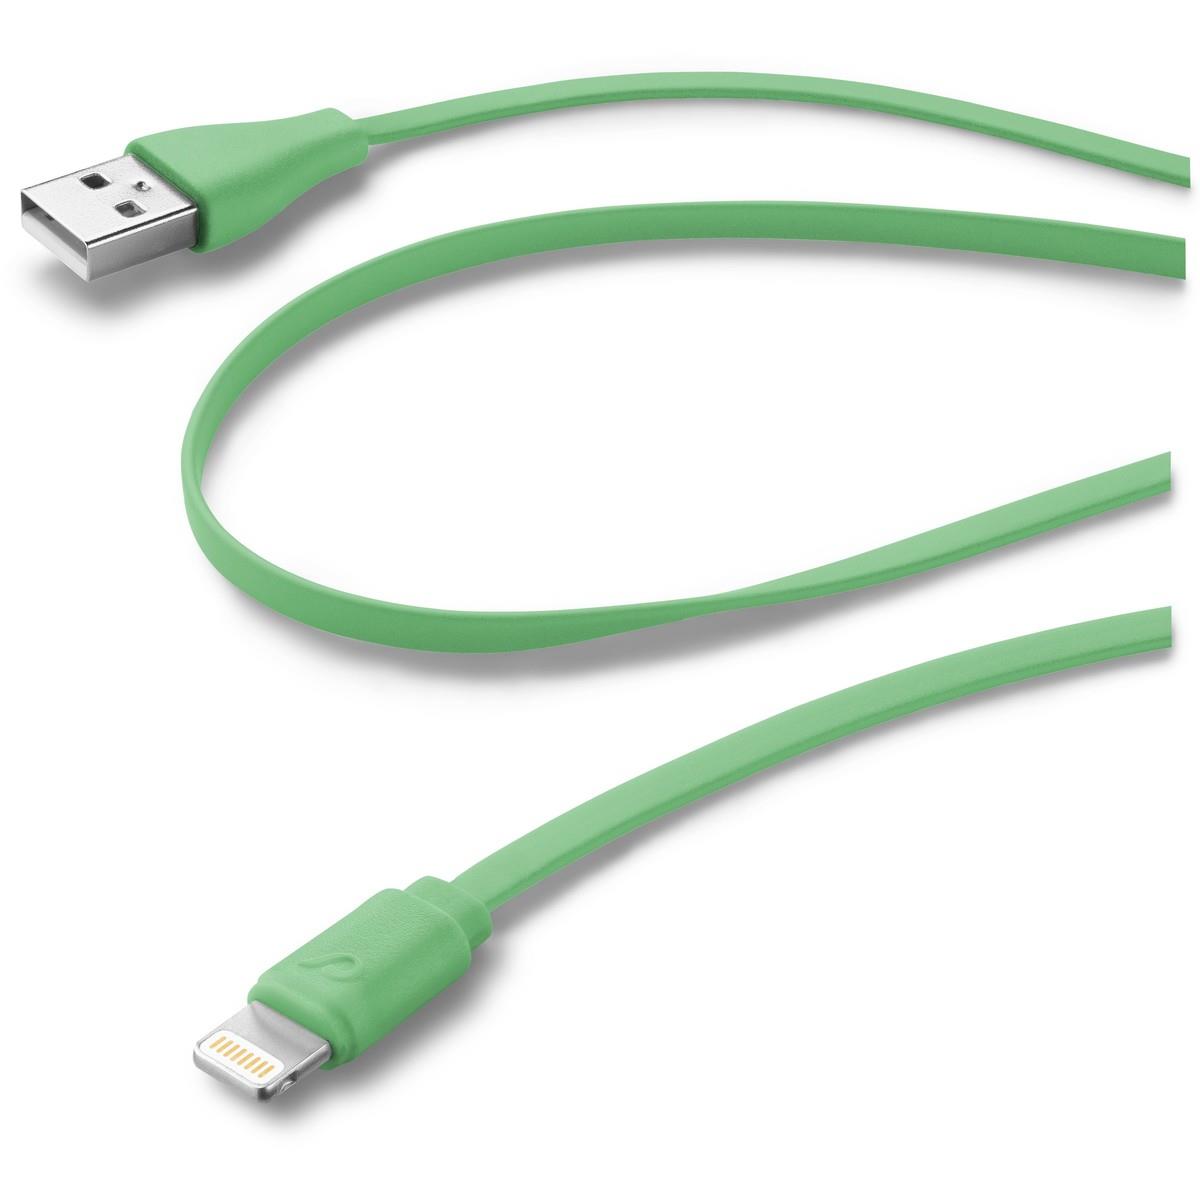 Lade- und Datenkabel FLAT 100cm USB Type-A auf Apple Lightning